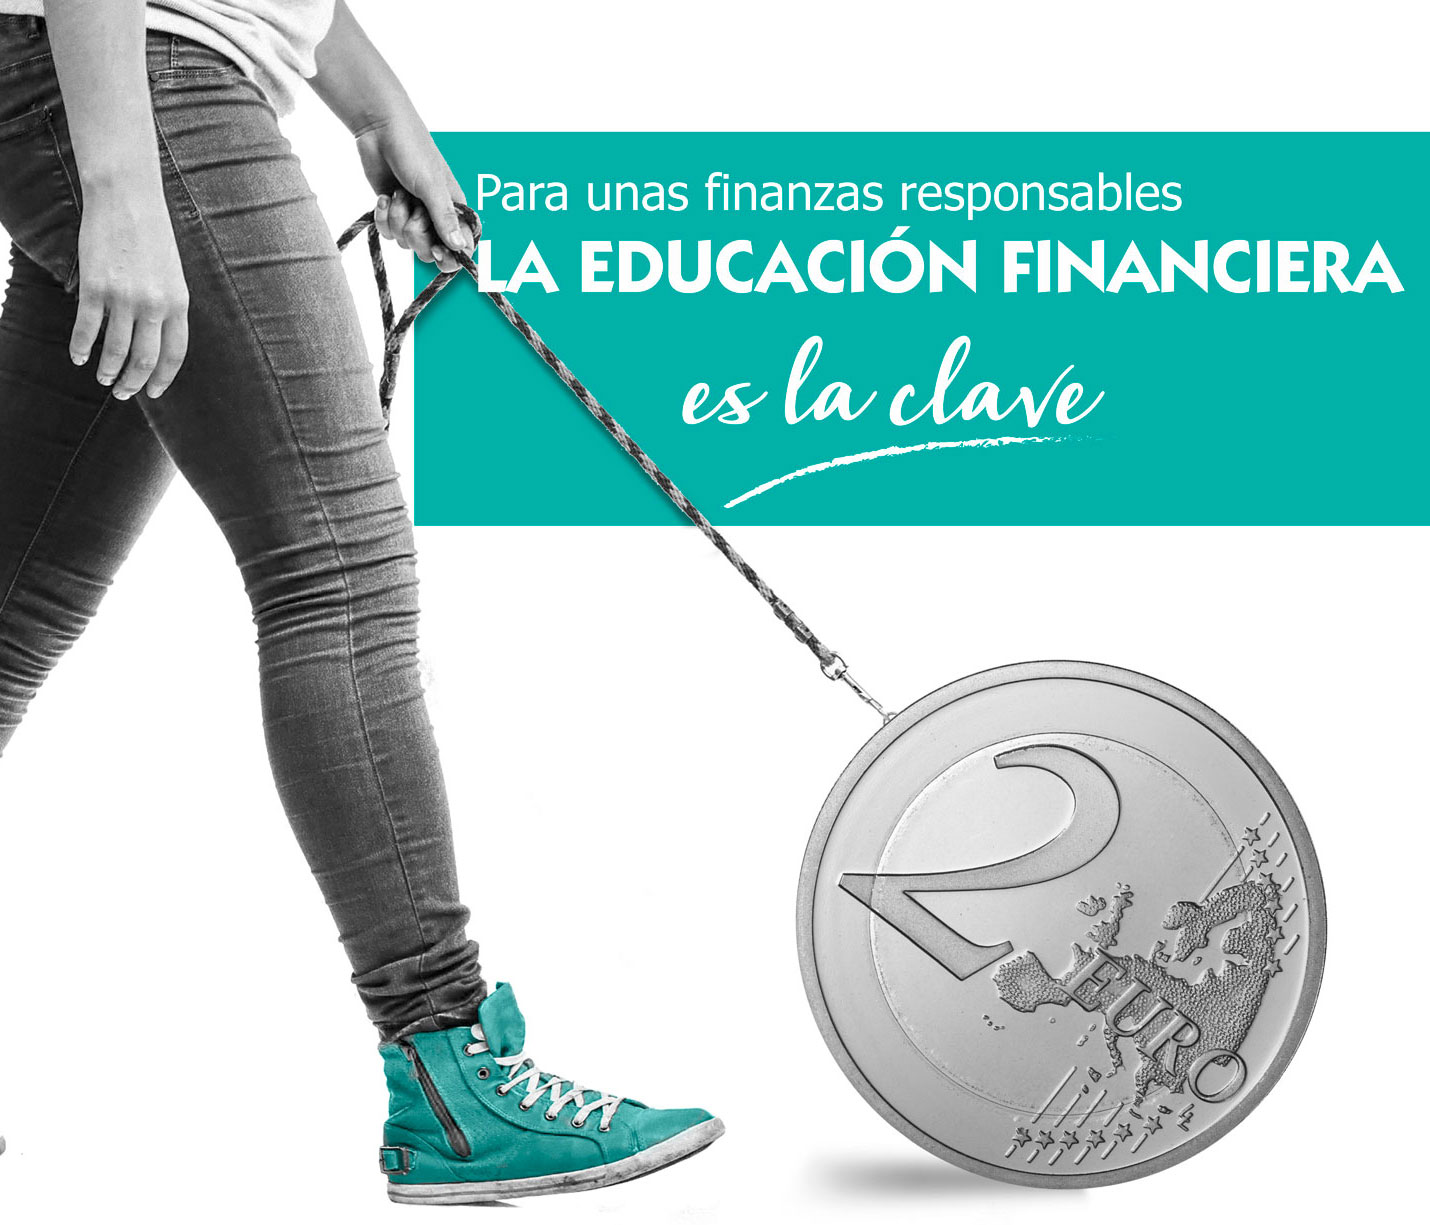 Lunes, Día de la educación financiera